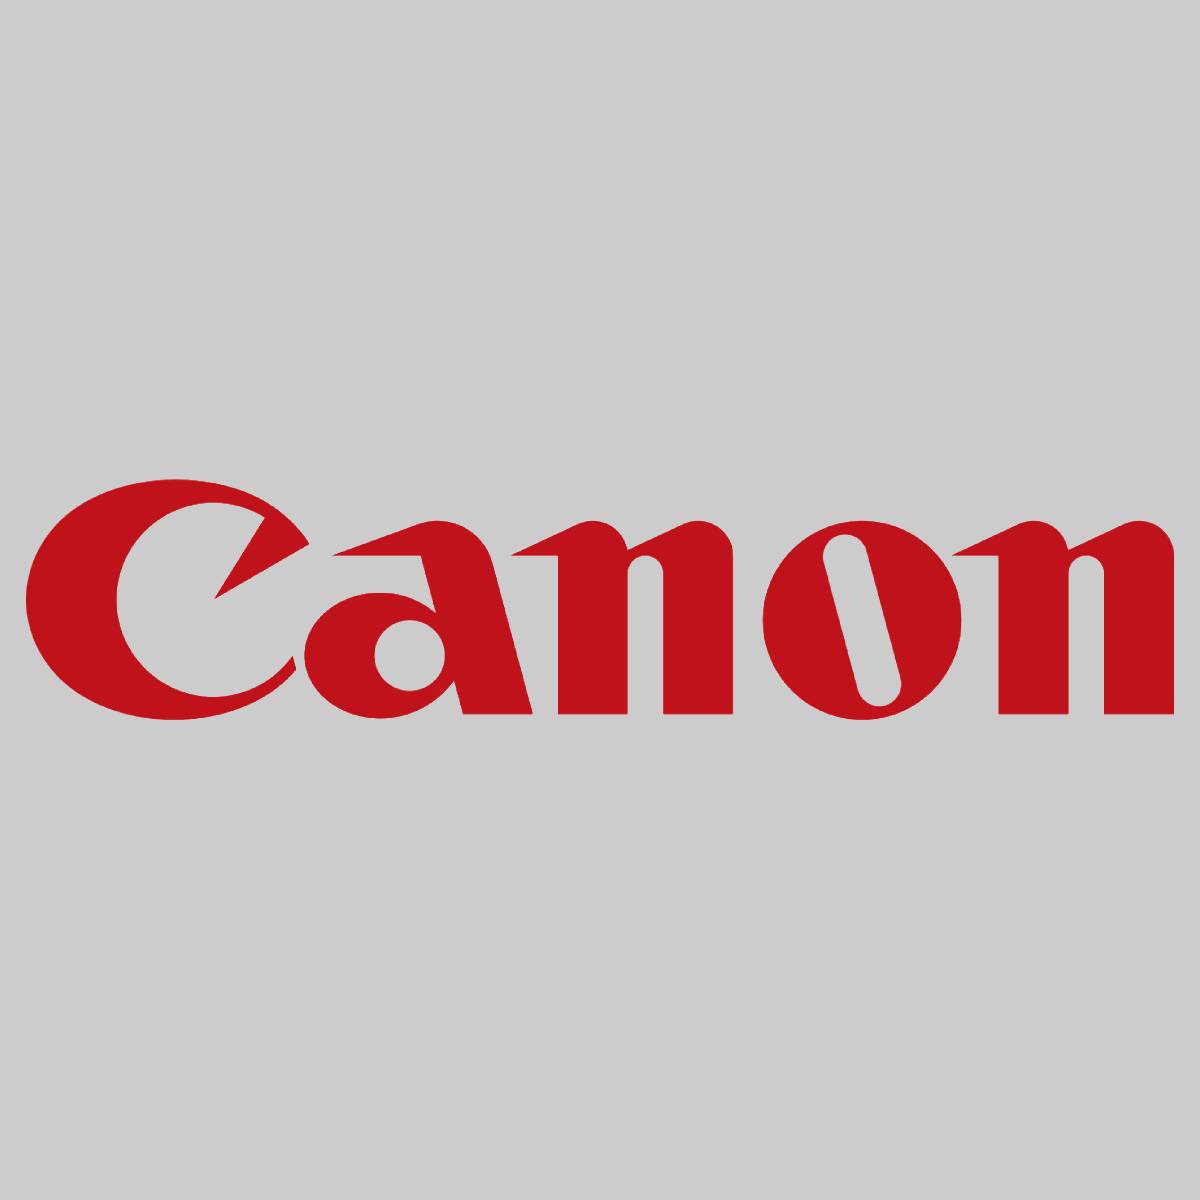 "Original Canon C-EXV19 Toner Clear 3229B002 imagePRESS C 1 imagePRESS C 1 Plus